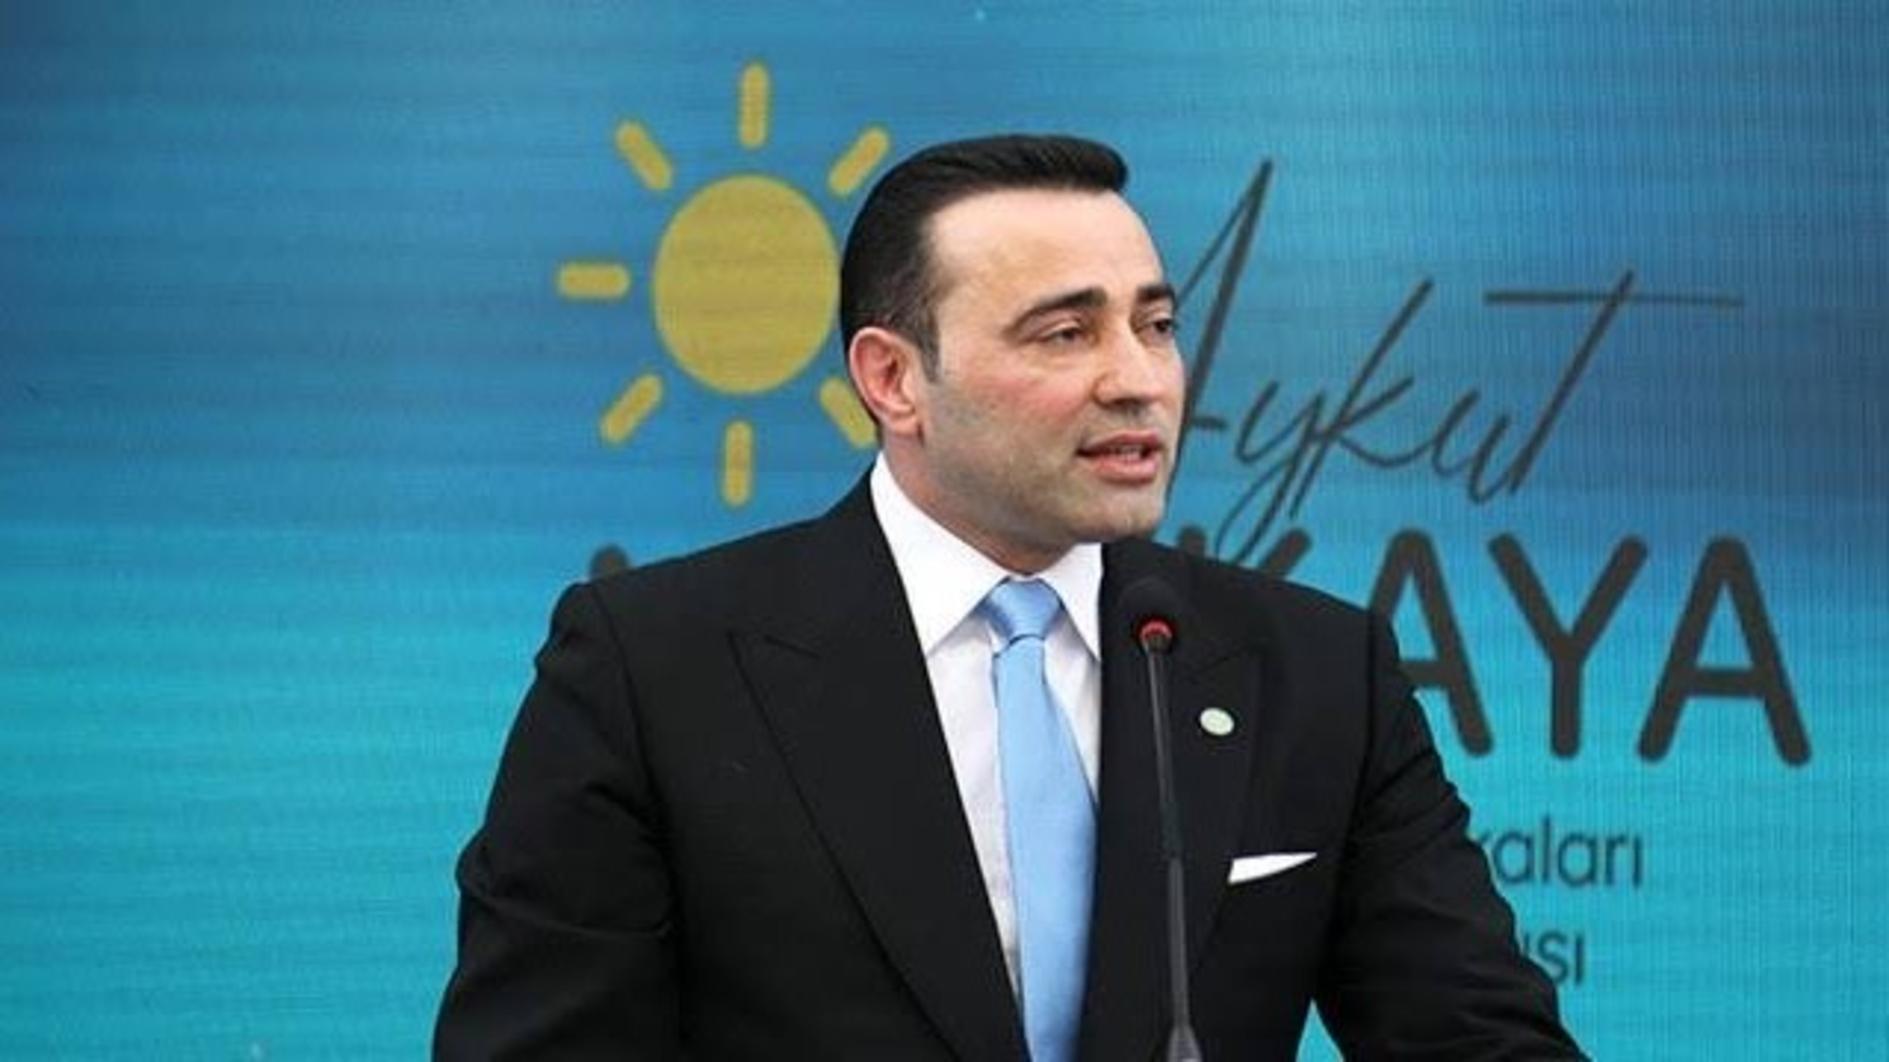 Het İYİ-partijlid neemt ontslag uit de partij